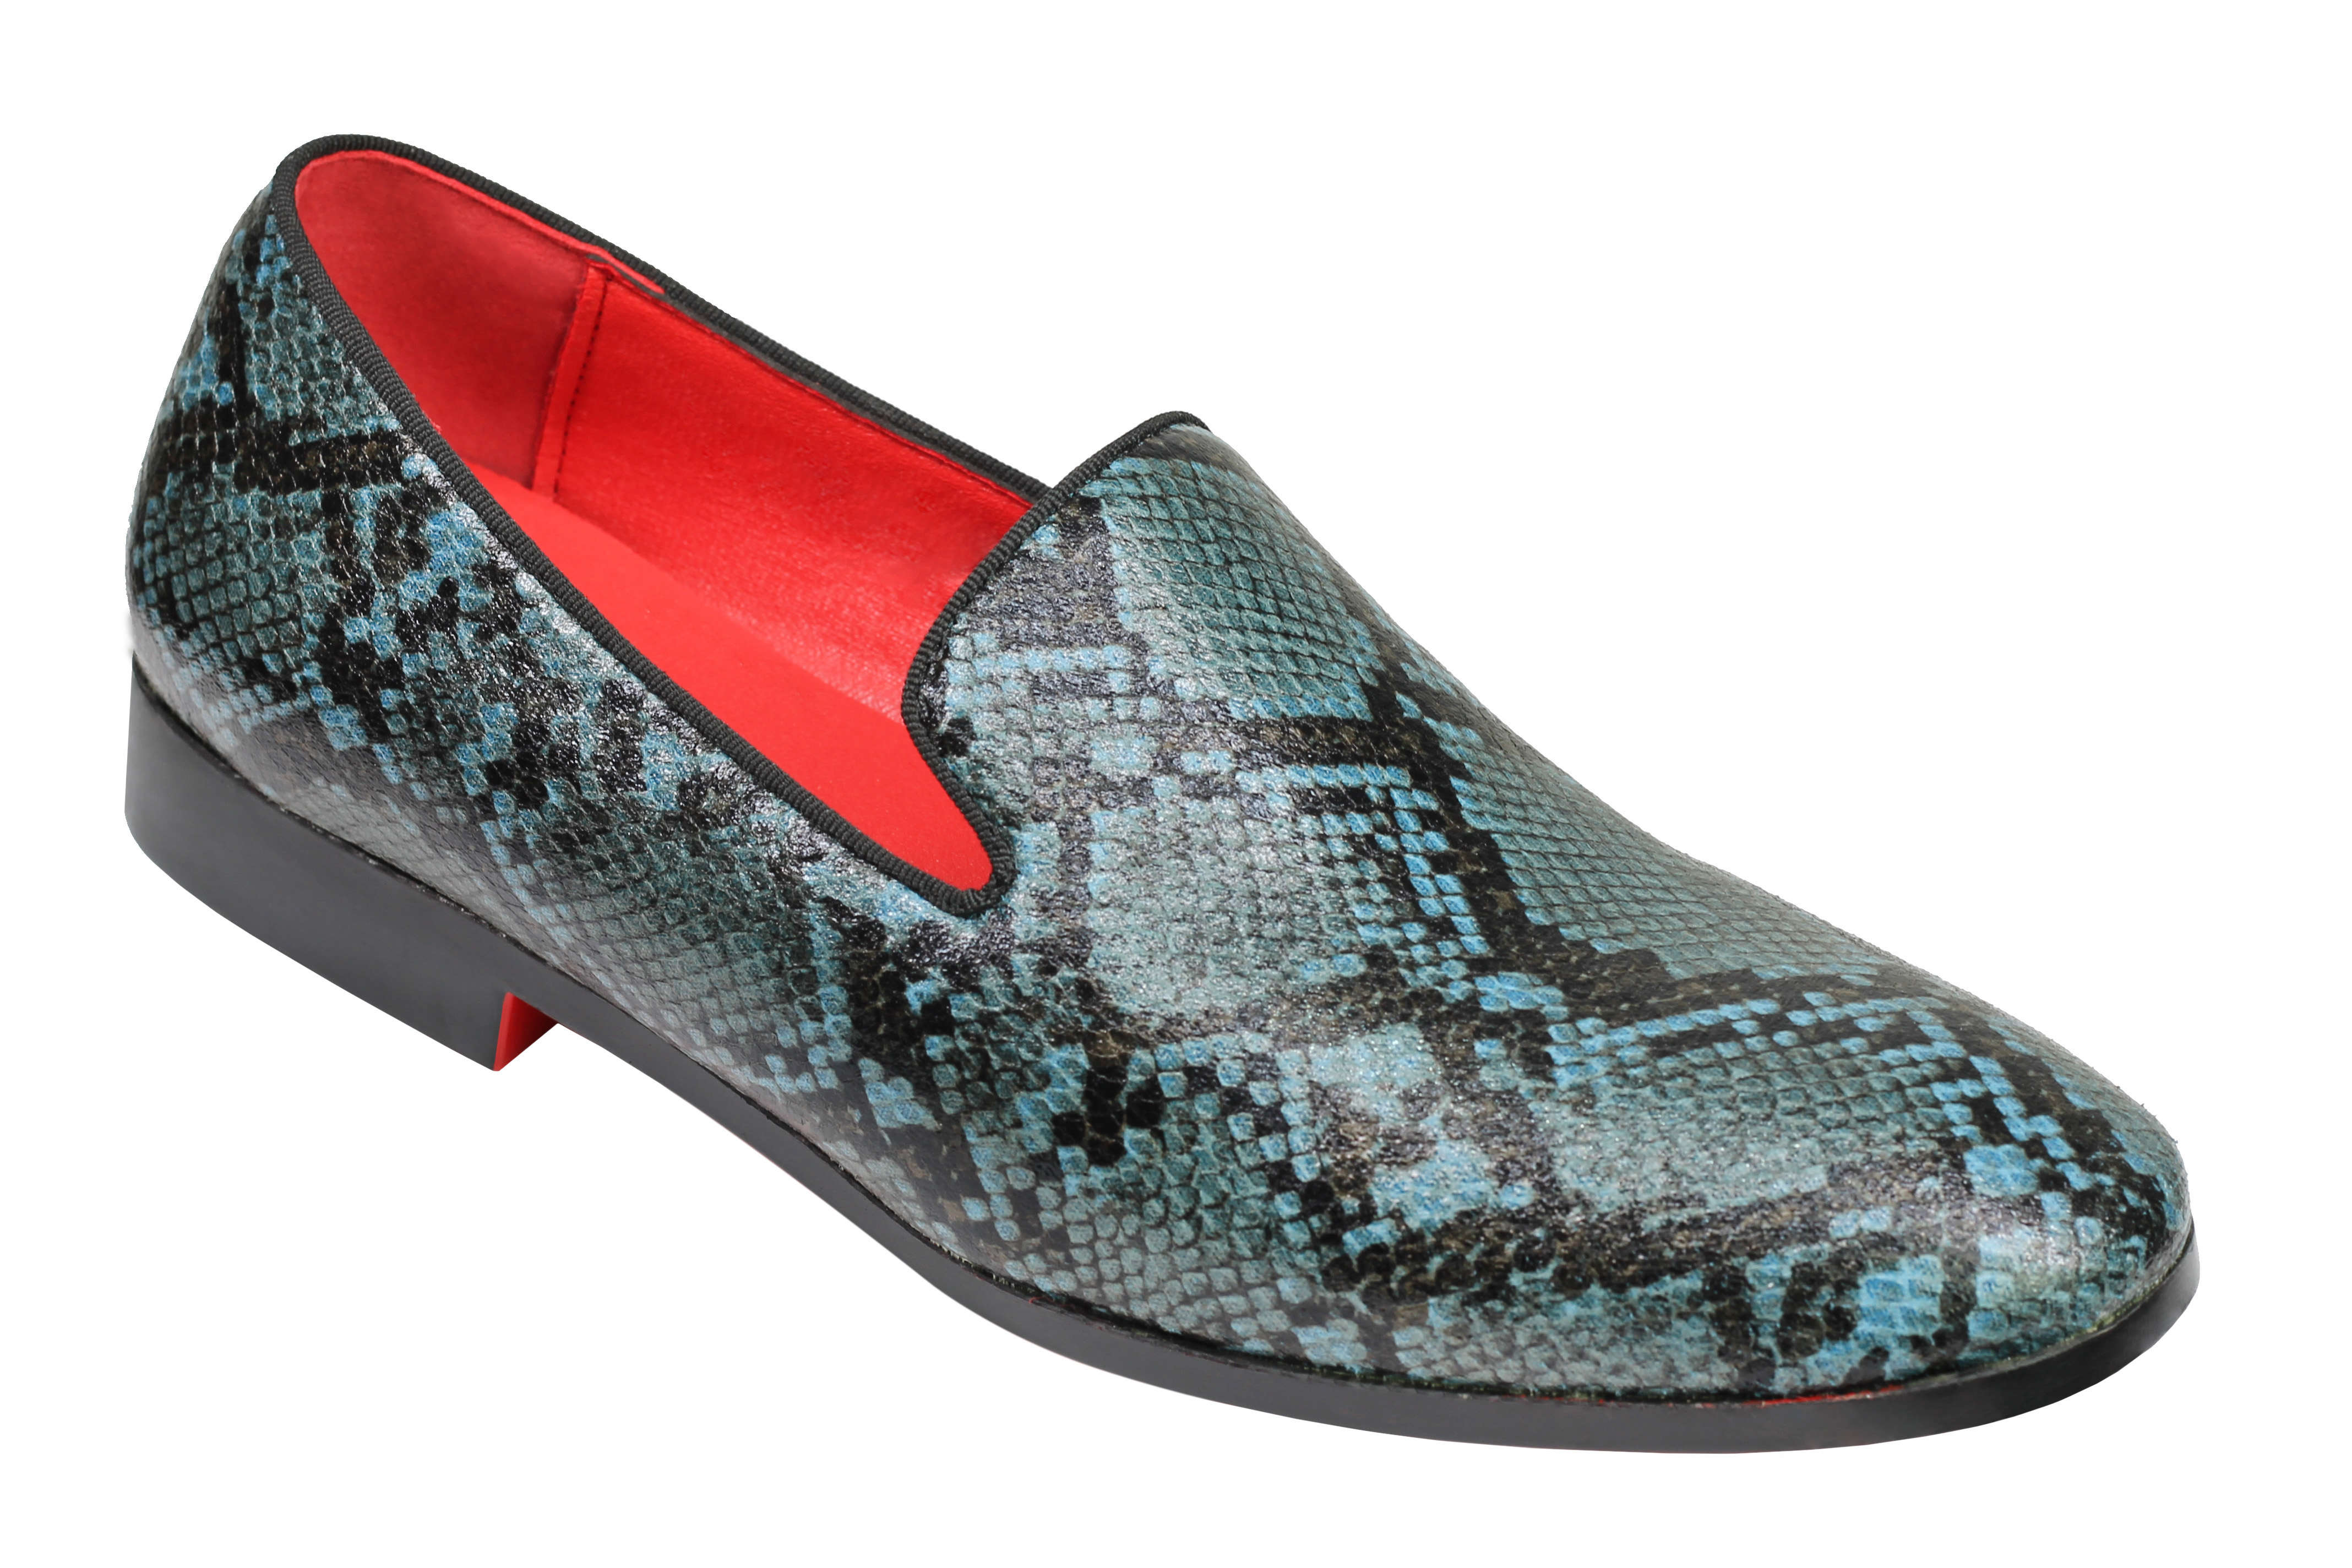 Mens Faux Leather Blue Black Python Skin Print Effect Loafer Slip On Dress Shoes